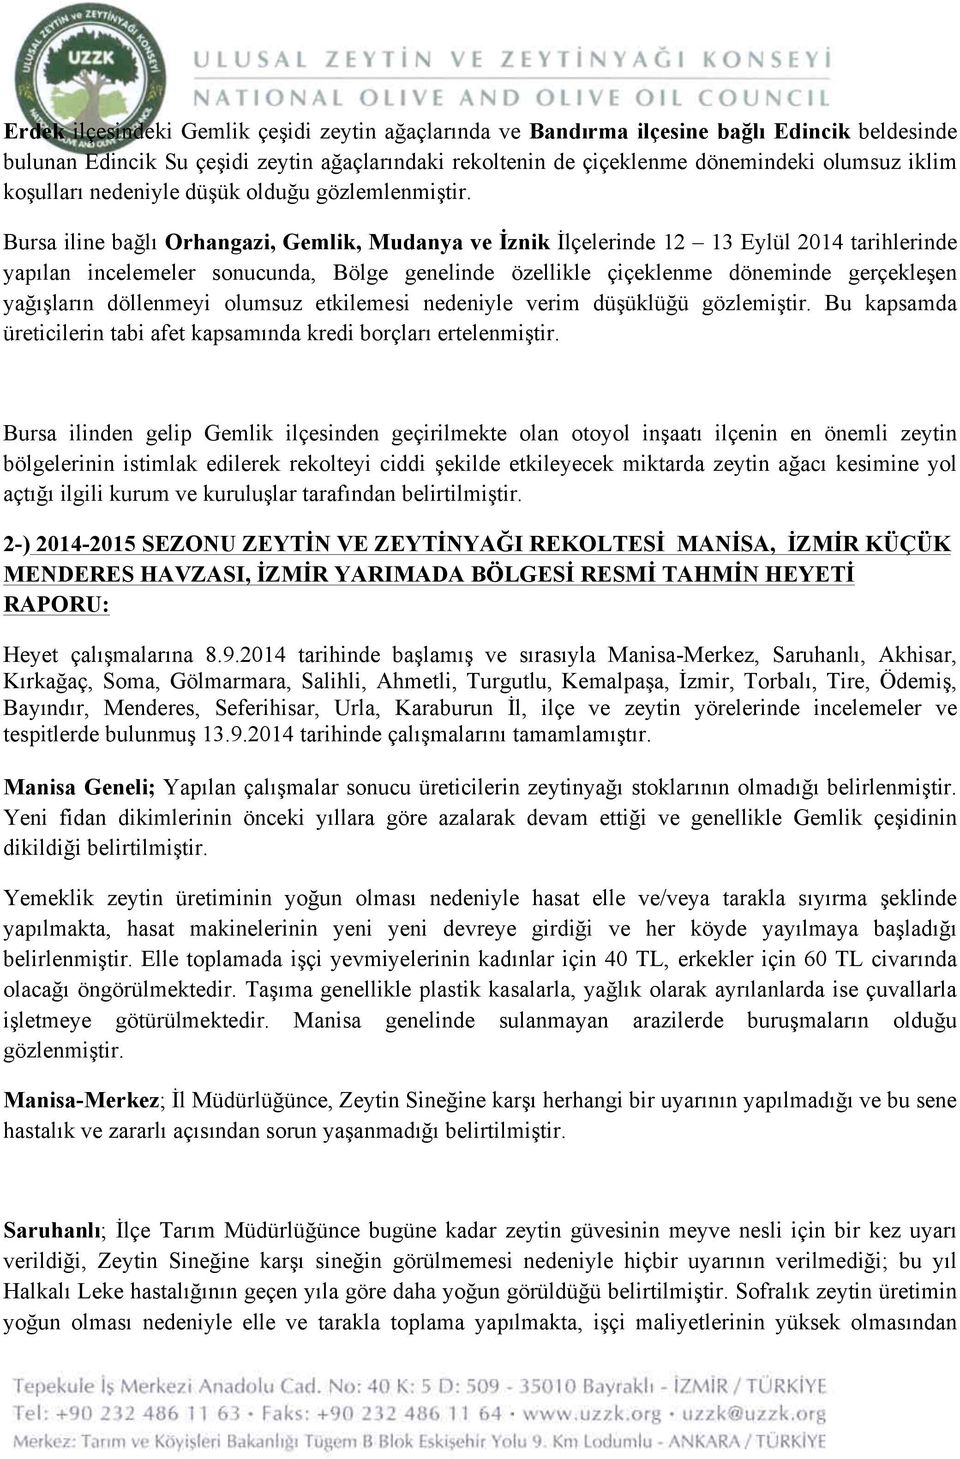 Bursa iline bağlı Orhangazi, Gemlik, Mudanya ve İznik İlçelerinde 12 13 Eylül 2014 tarihlerinde yapılan incelemeler sonucunda, Bölge genelinde özellikle çiçeklenme döneminde gerçekleşen yağışların